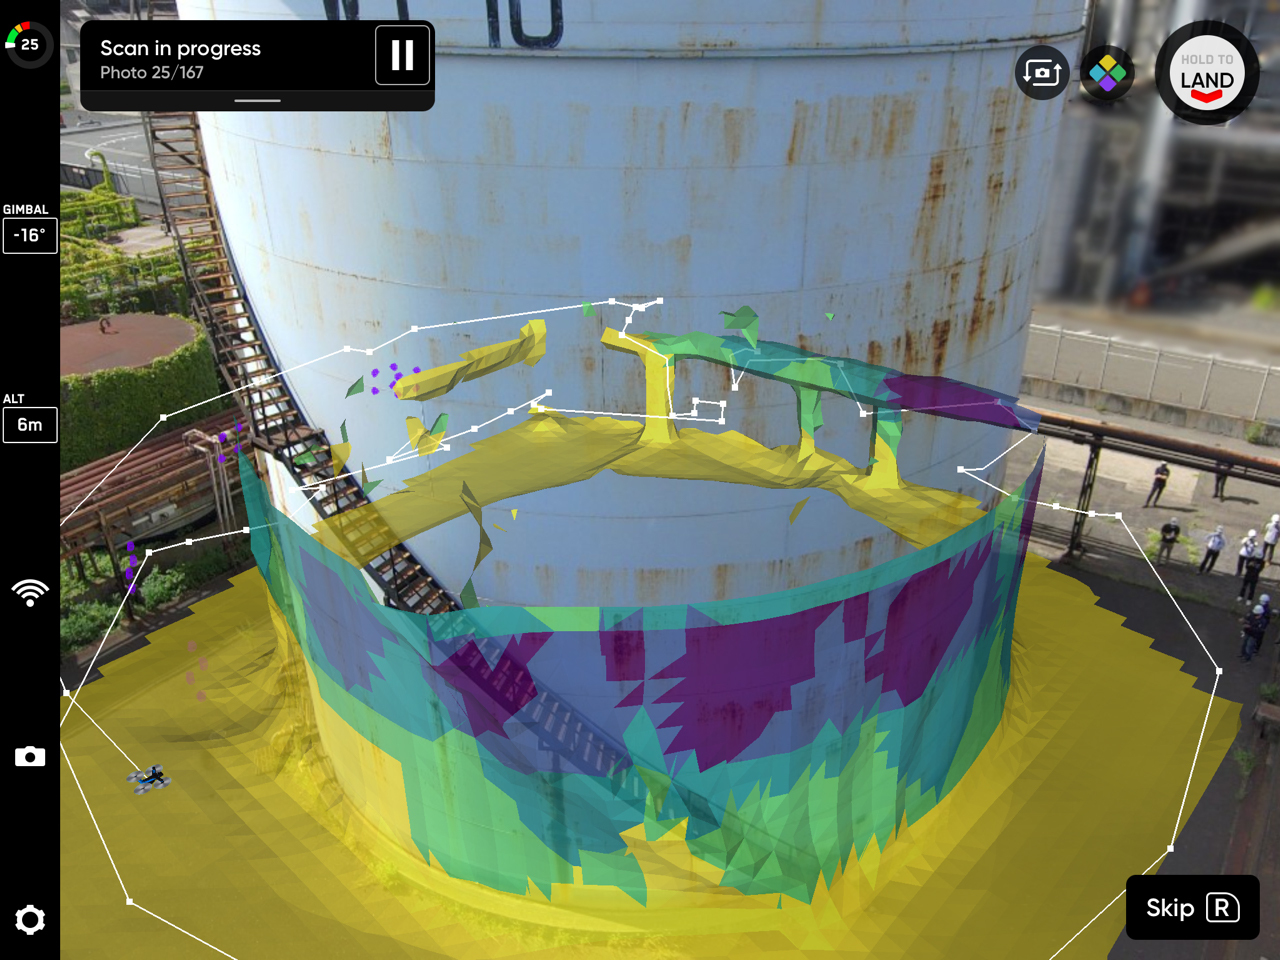 Skydio 2+が石油タンクの周囲を自律飛行して、3Dデジタルモデル生成用の静止画を自動撮影している様子（SkydioアプリのAR表示のスクリーンショット）